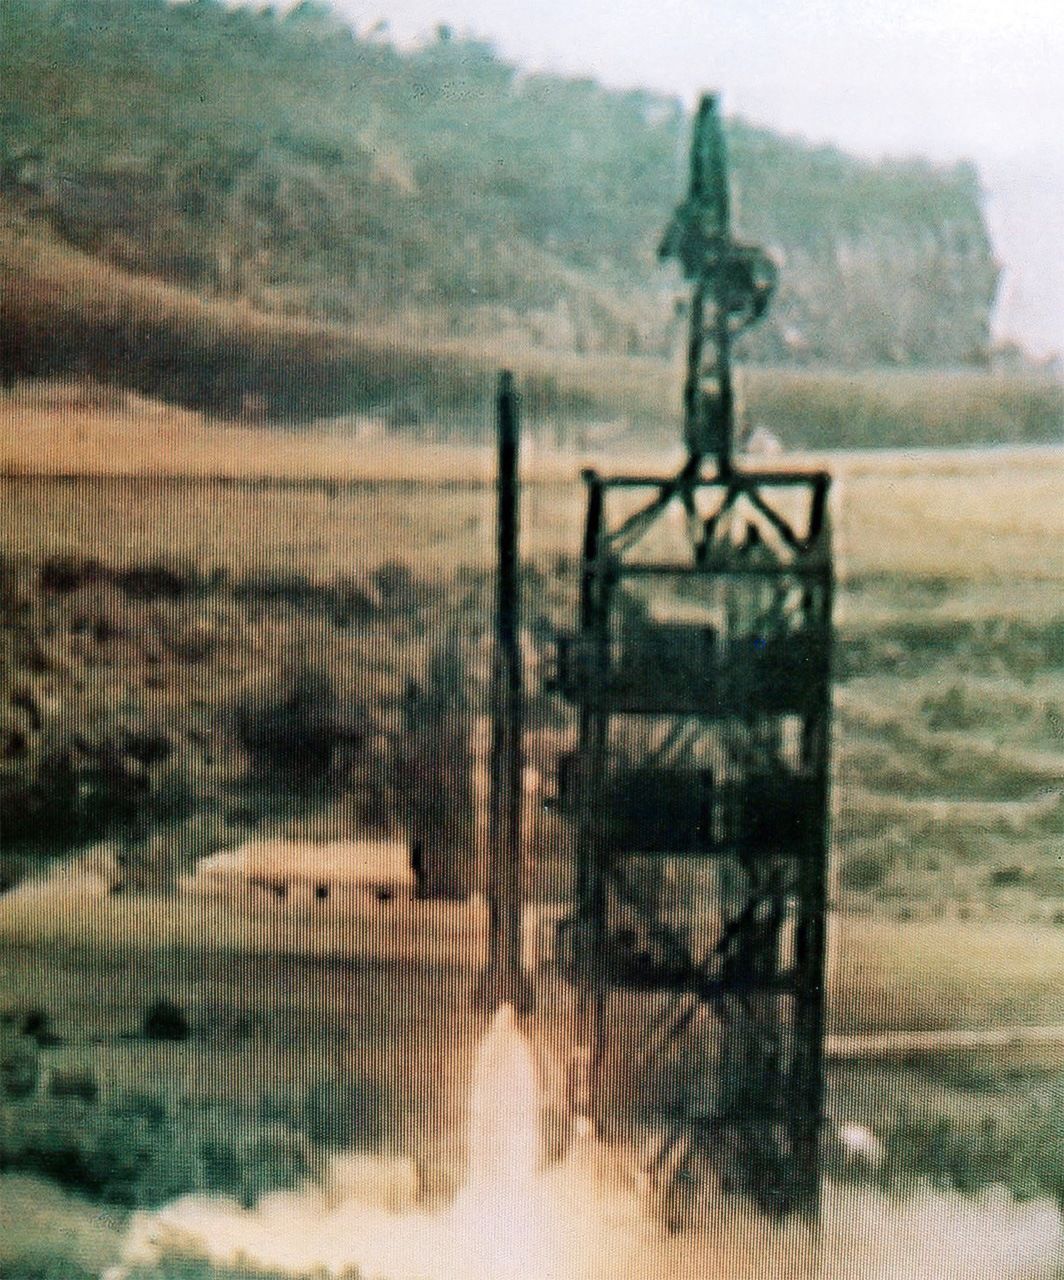 صاروخ تيبدونغ الكوري الشمالي الذي تم إطلاقه في 31/8/1998 (KCNA/AP/AFLO).